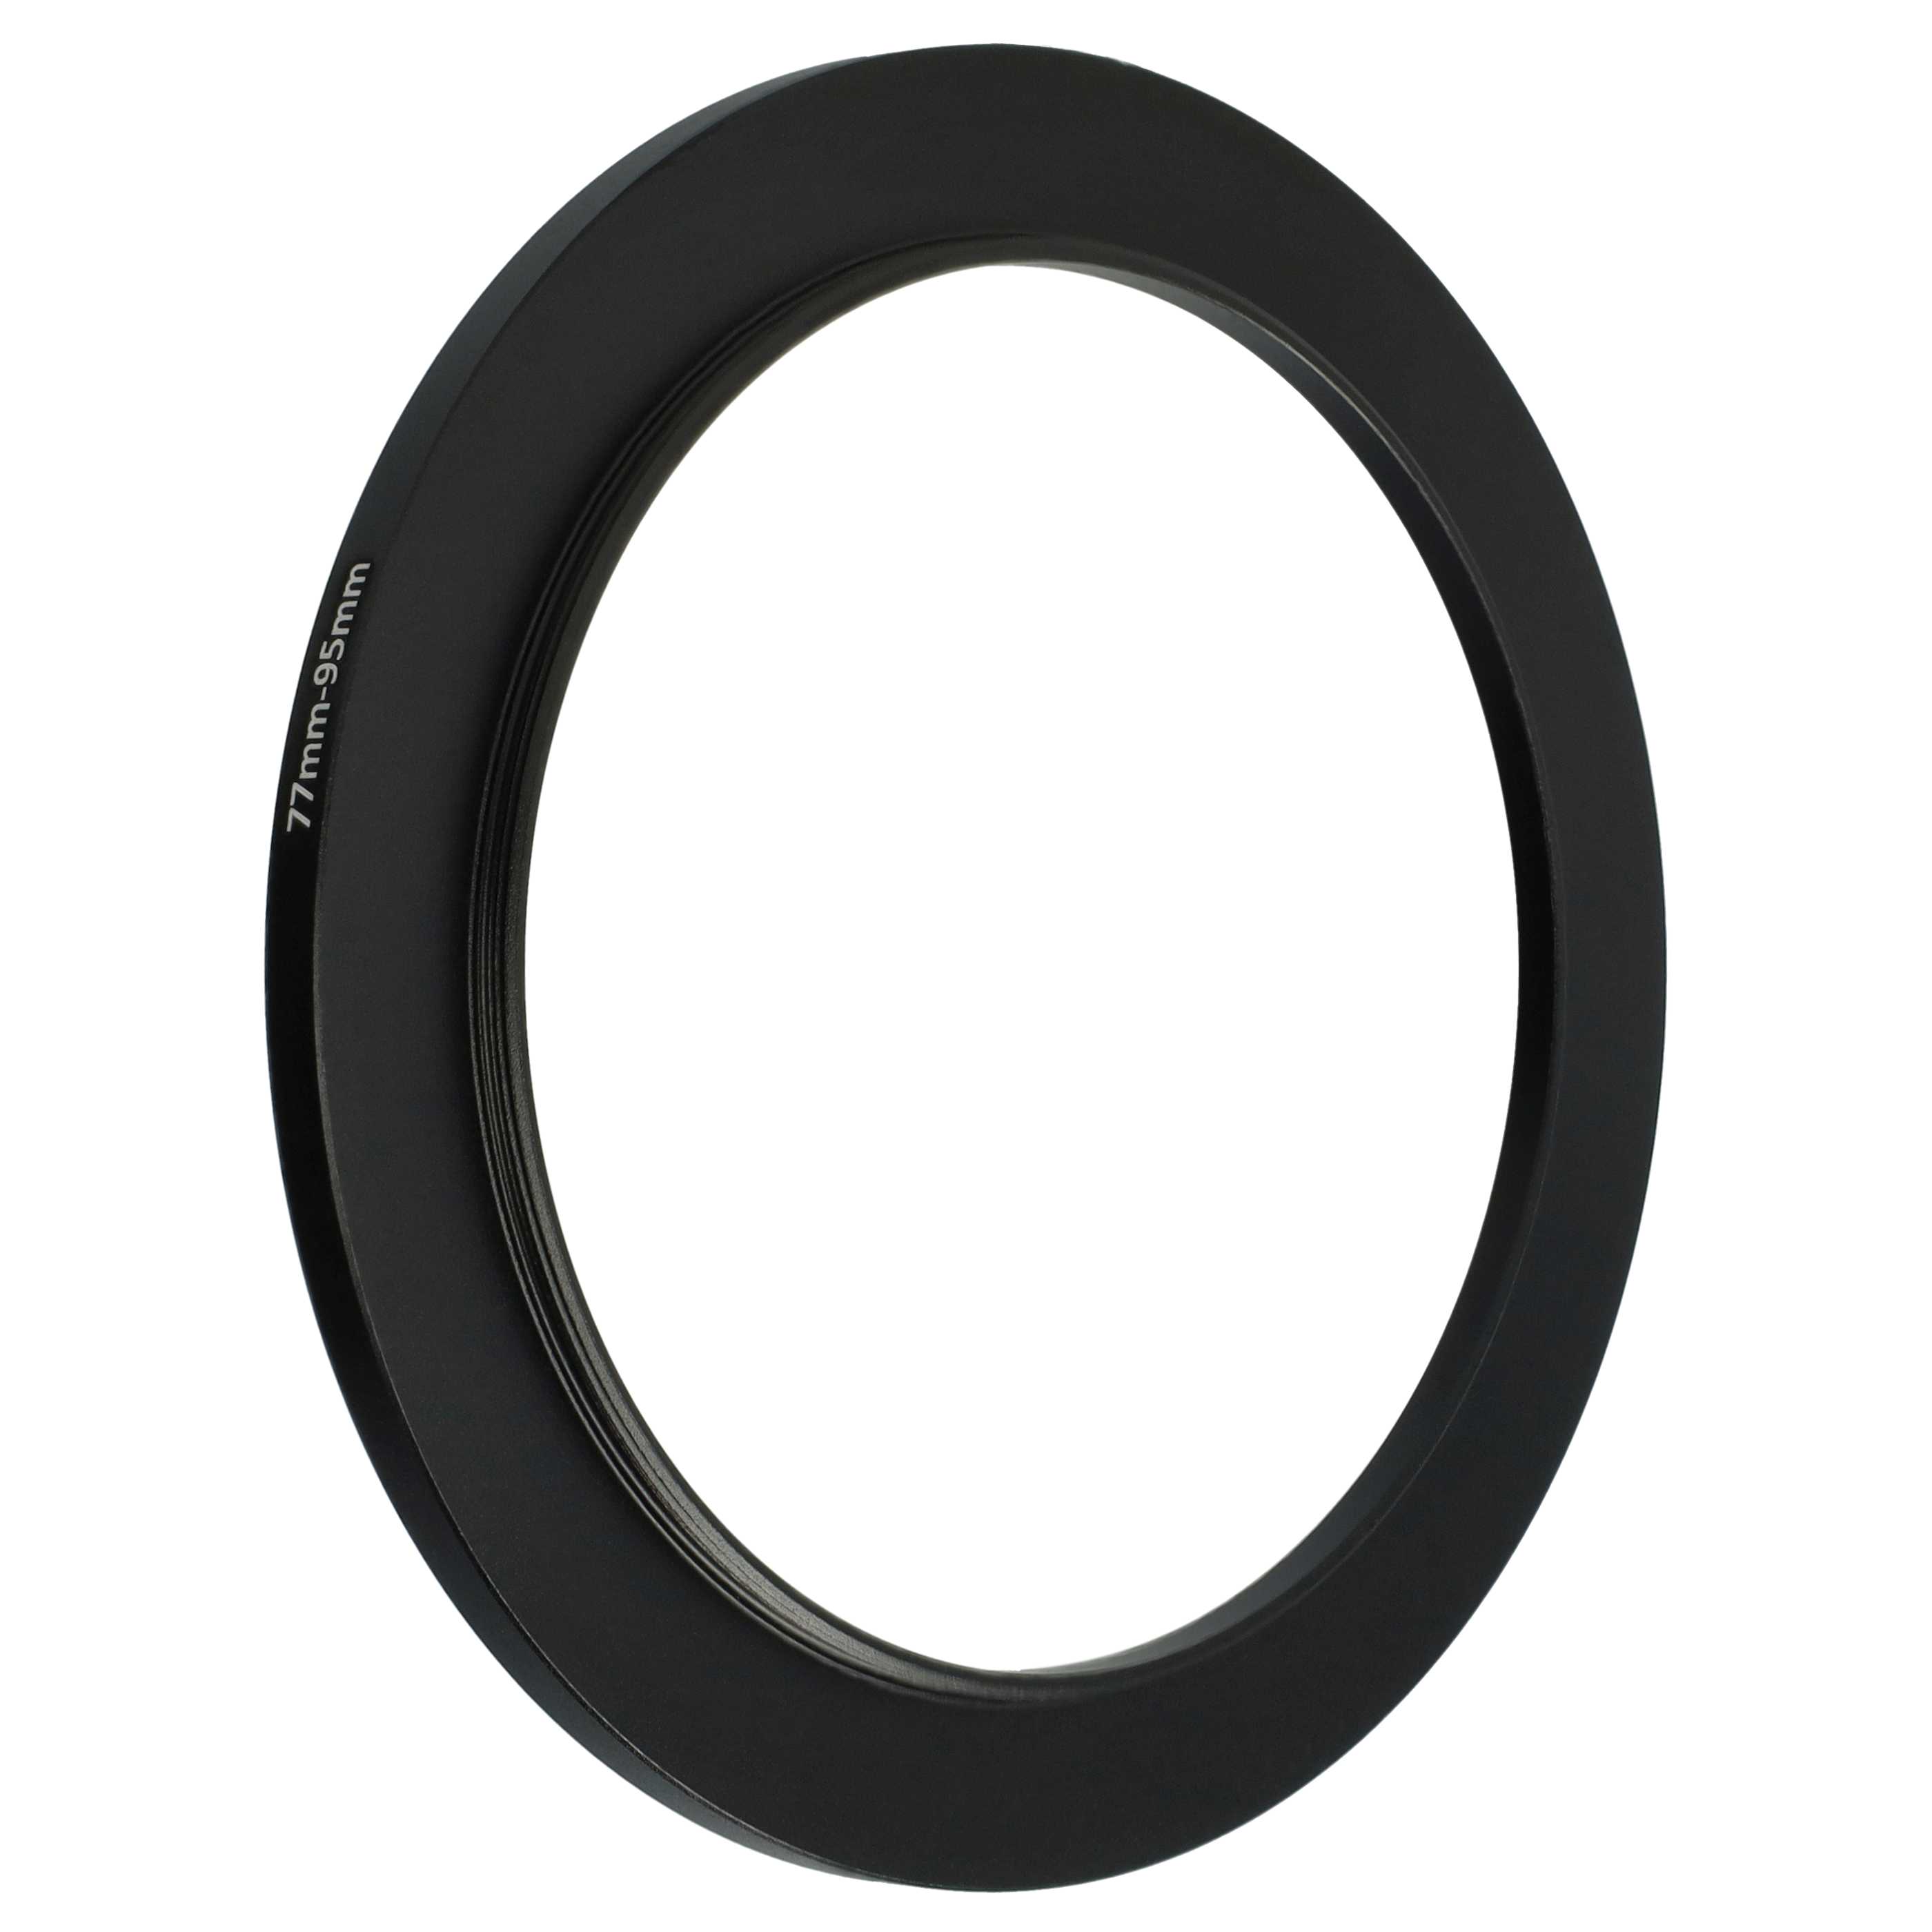 Step-Up-Ring Adapter 77 mm auf 95 mm passend für diverse Kamera-Objektive - Filteradapter